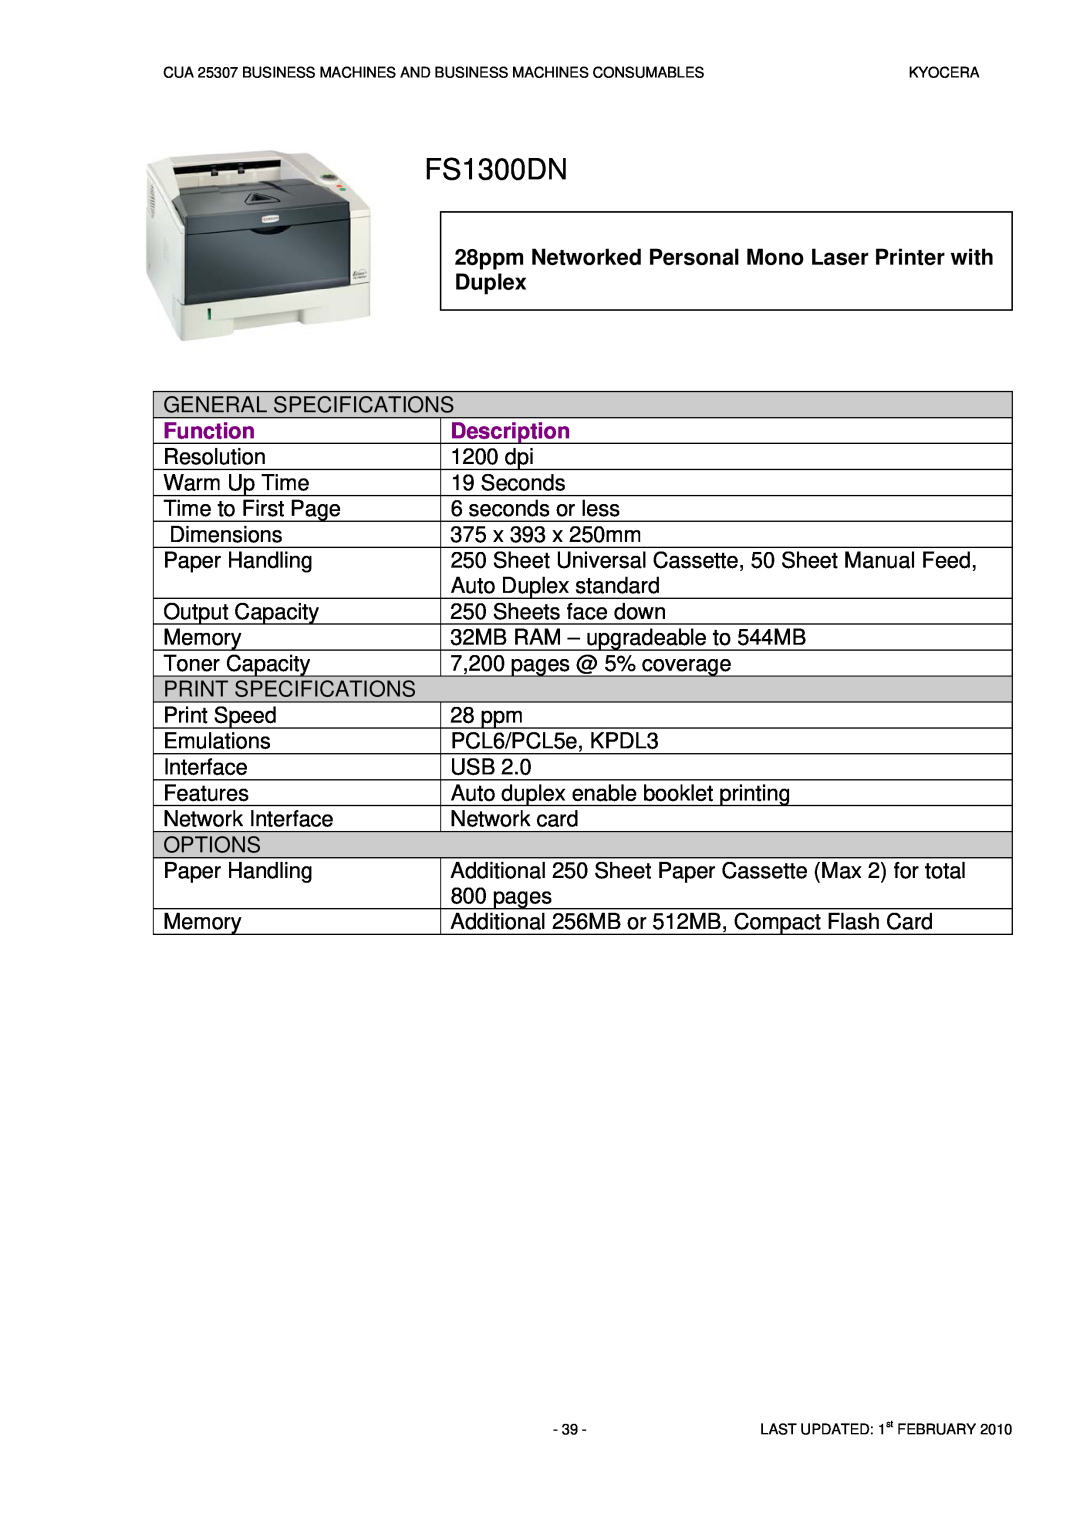 Kyocera CUA 25307 manual FS1300DN, Function, Description 1200 dpi 